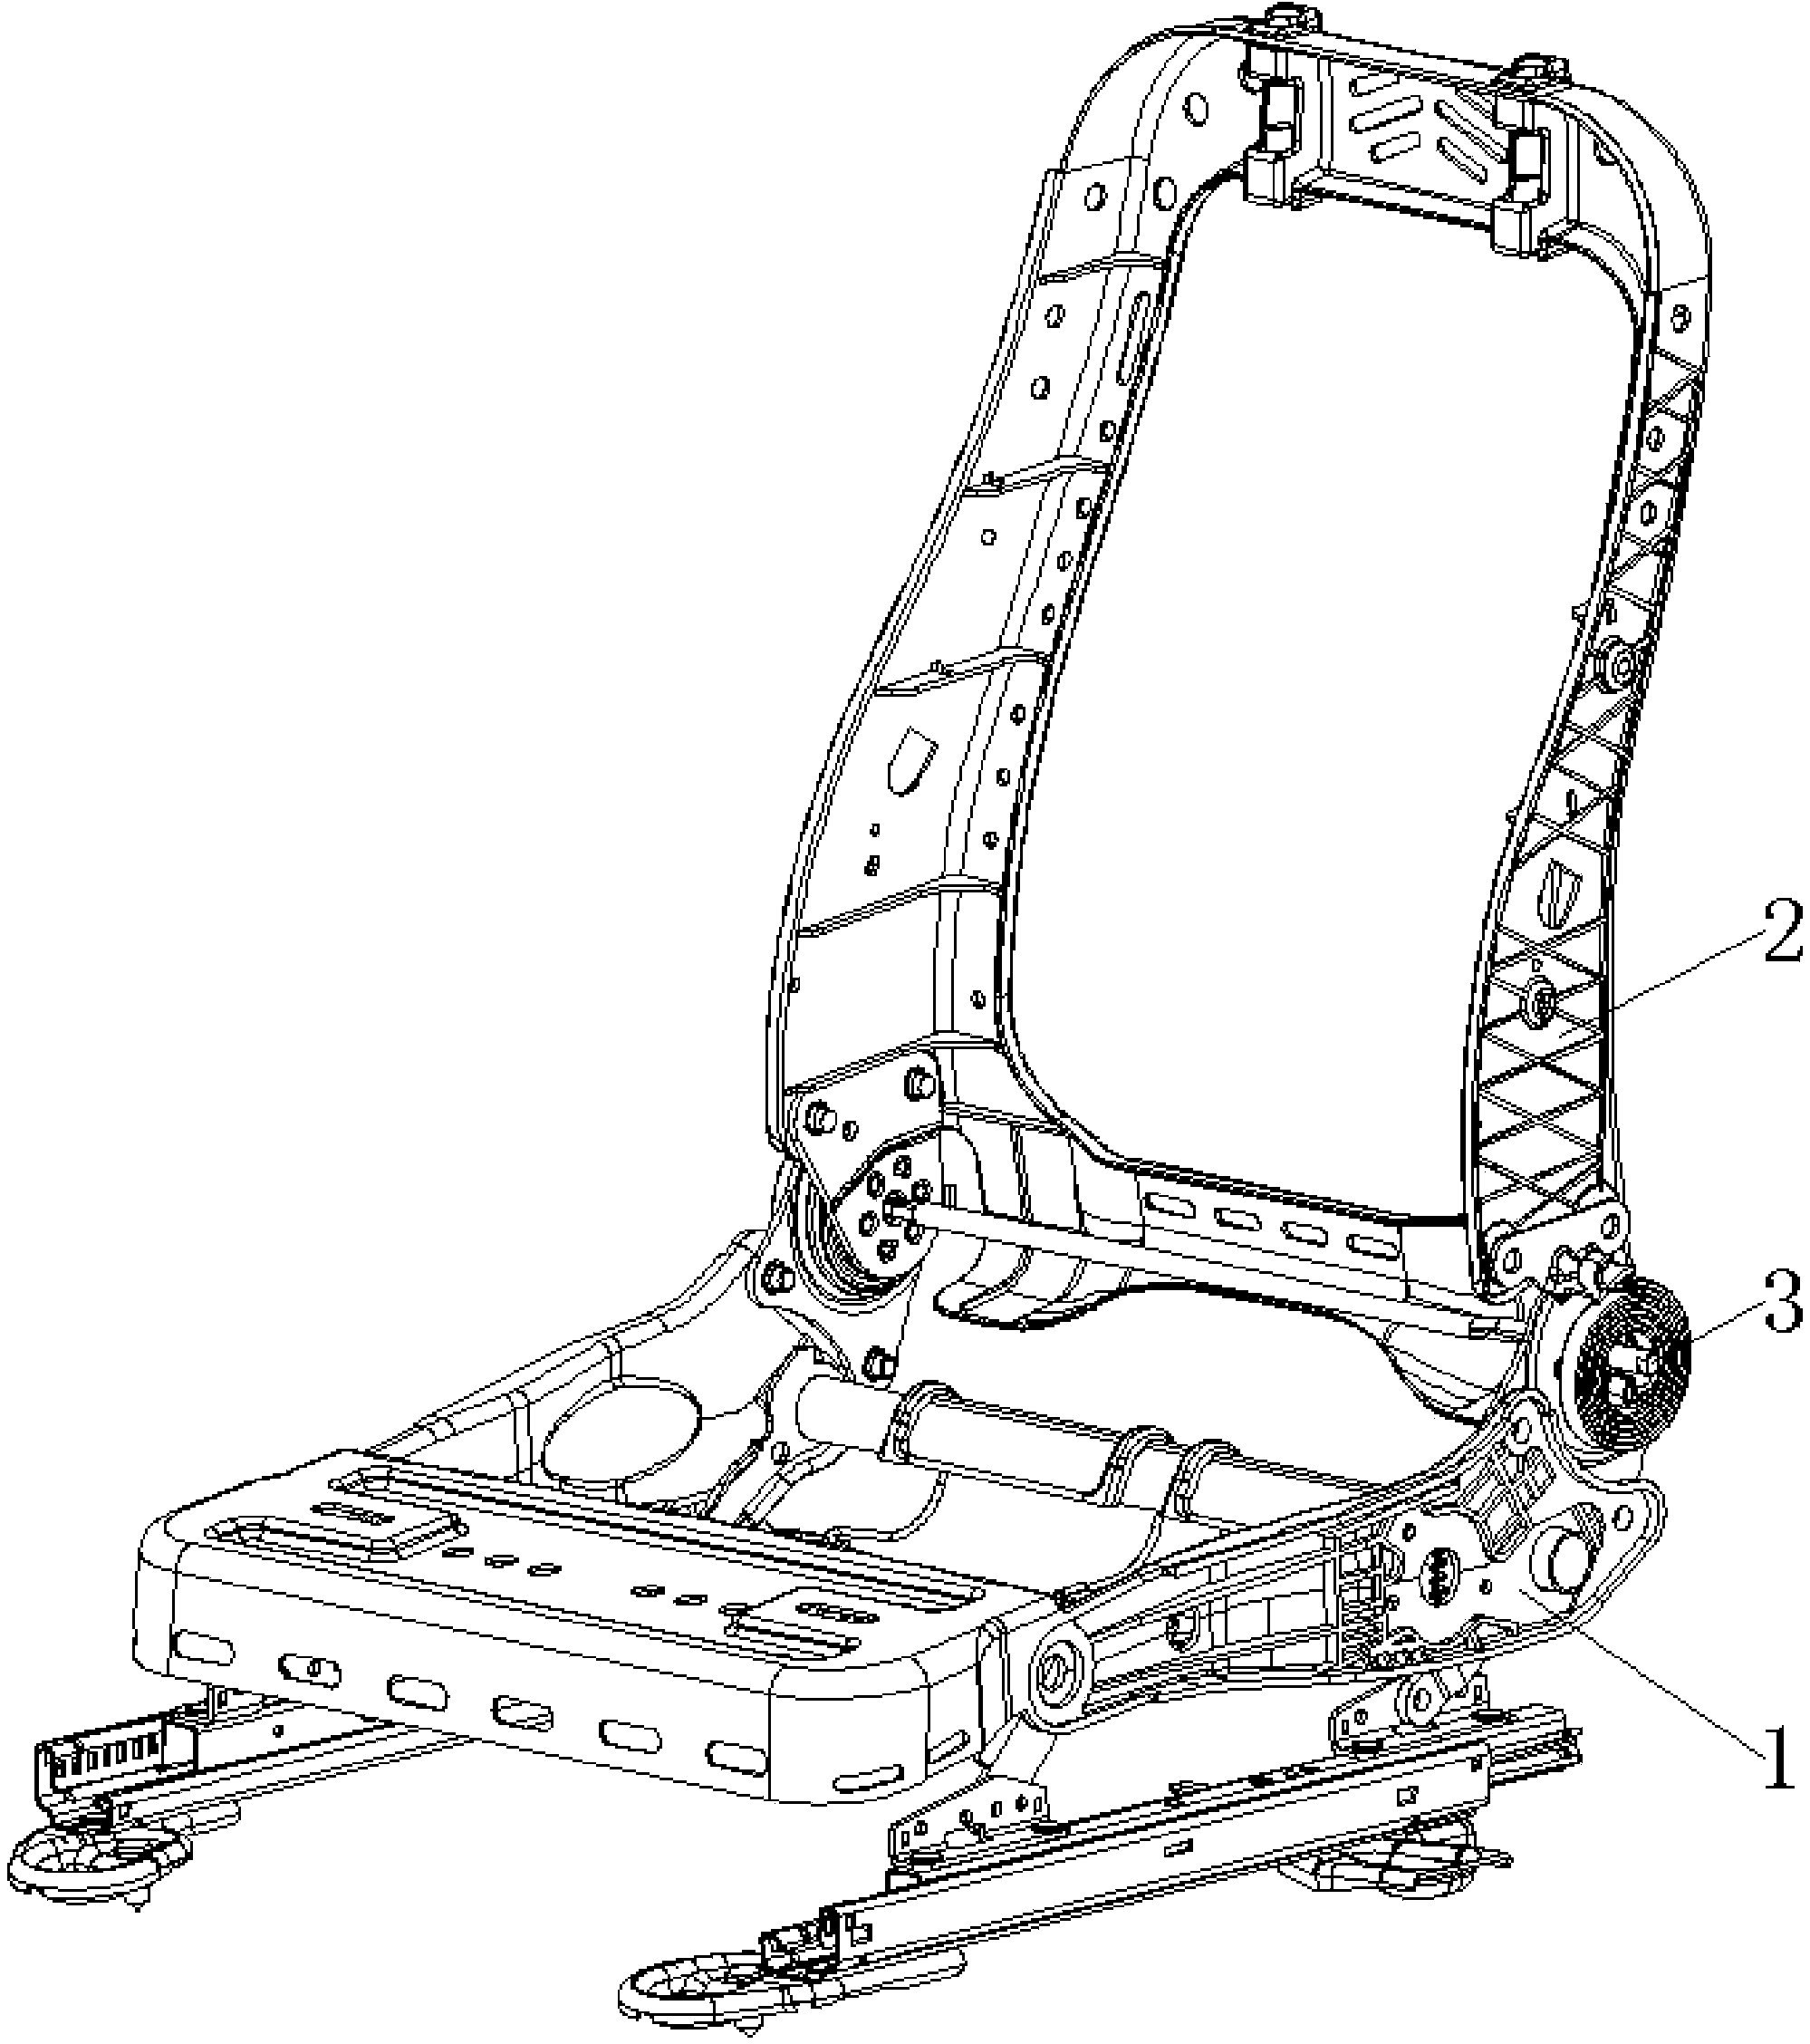 Automobile seat skeleton